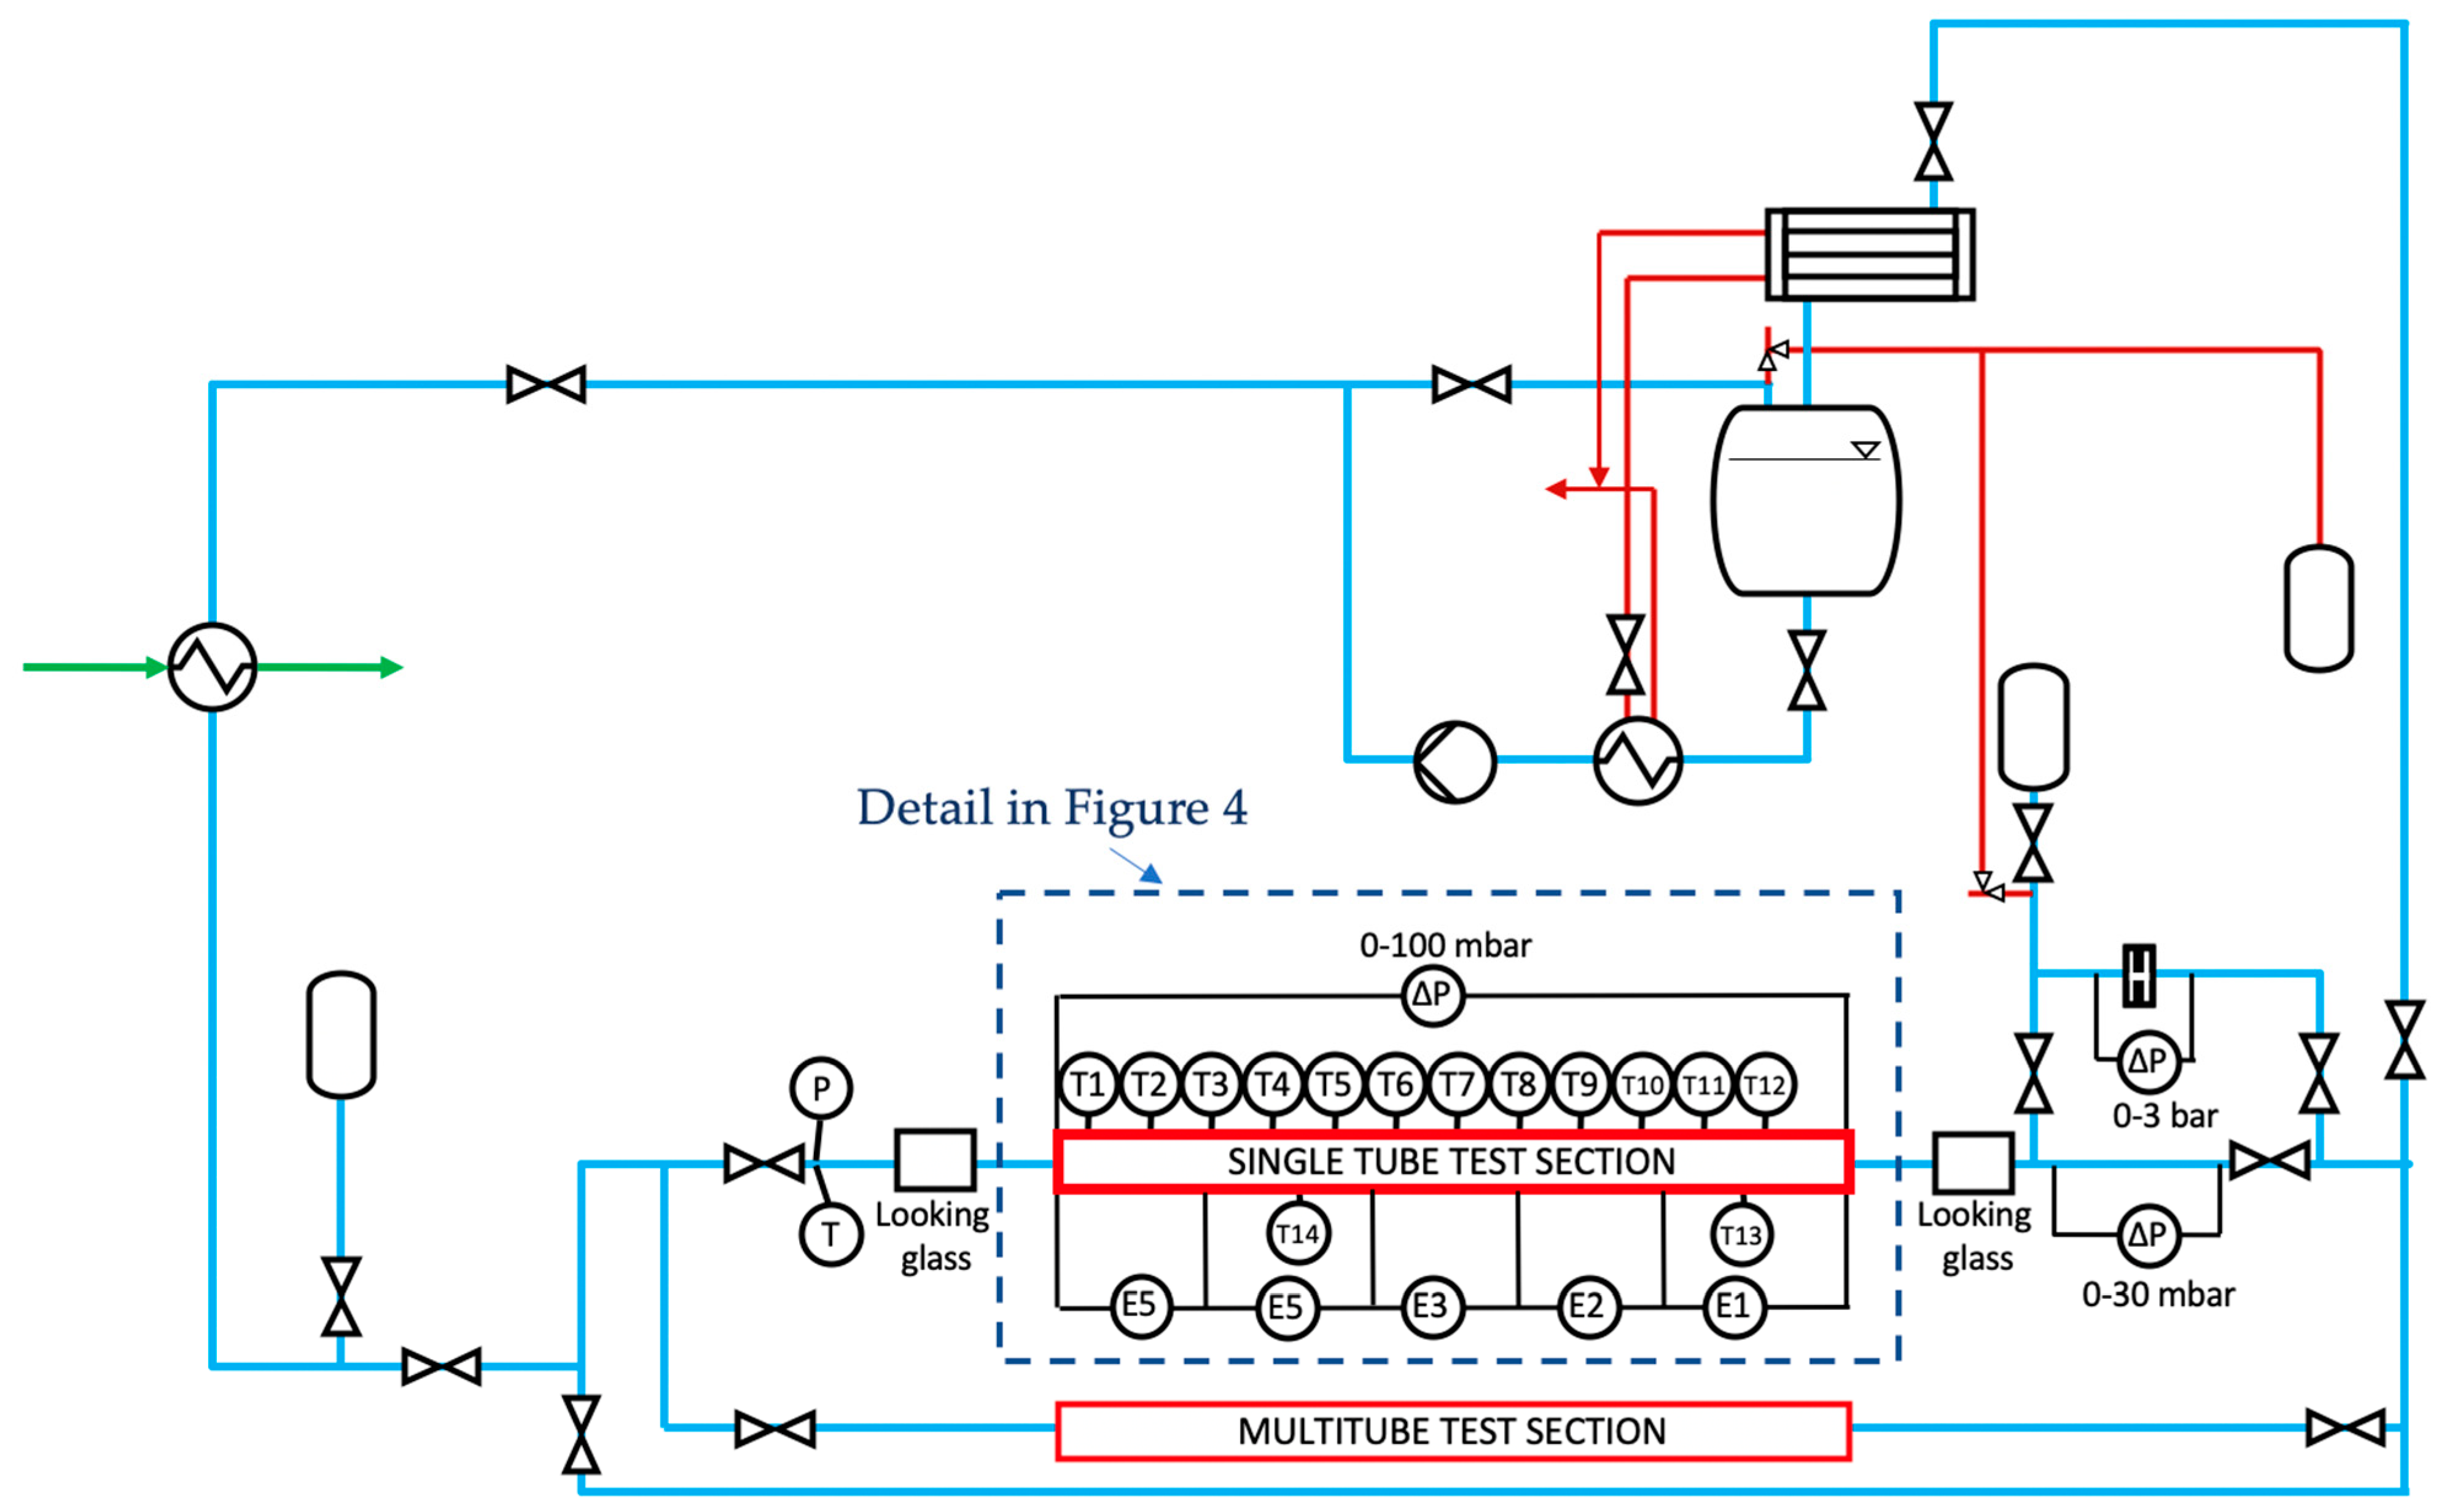 Simplified P&ID drawing of heat transfer flow loop.